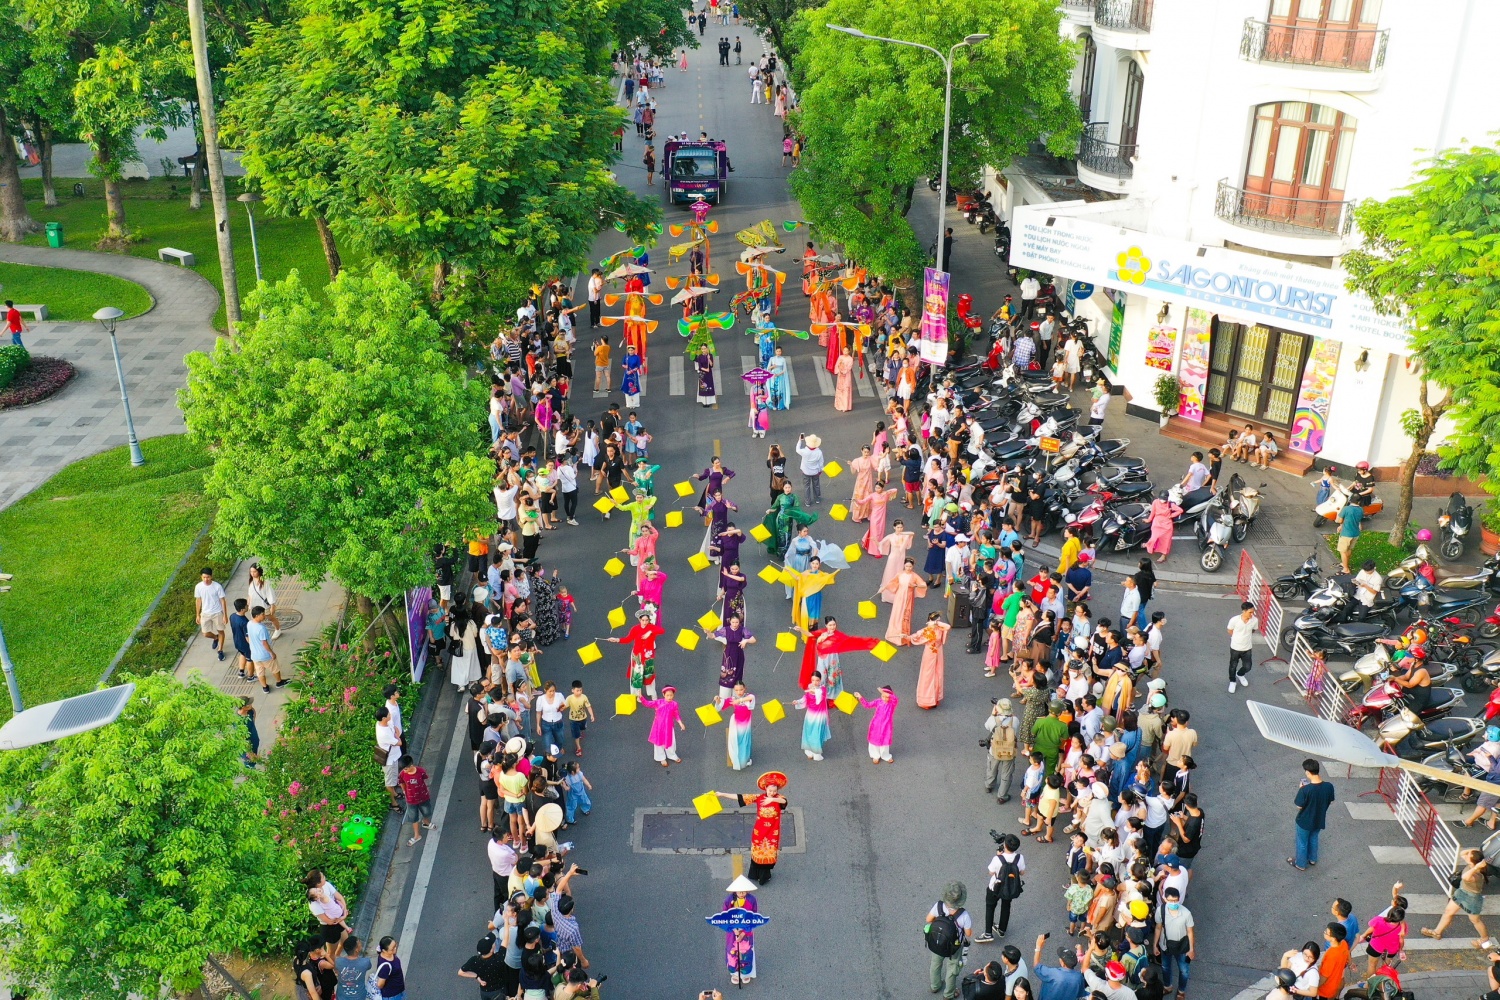 Màn trình diễn khuấy động đường phố trung tâm TP Huế bằng những tiếng trống và điệu múa đẹp mắt của đoàn nghệ thuật Thái Nghi Đường (Huế) cùng nhóm nhảy hiphop đến từ Trung tâm đào tạo khiêu vũ Cergy Pháp trên nền nhạc rộn ràng.